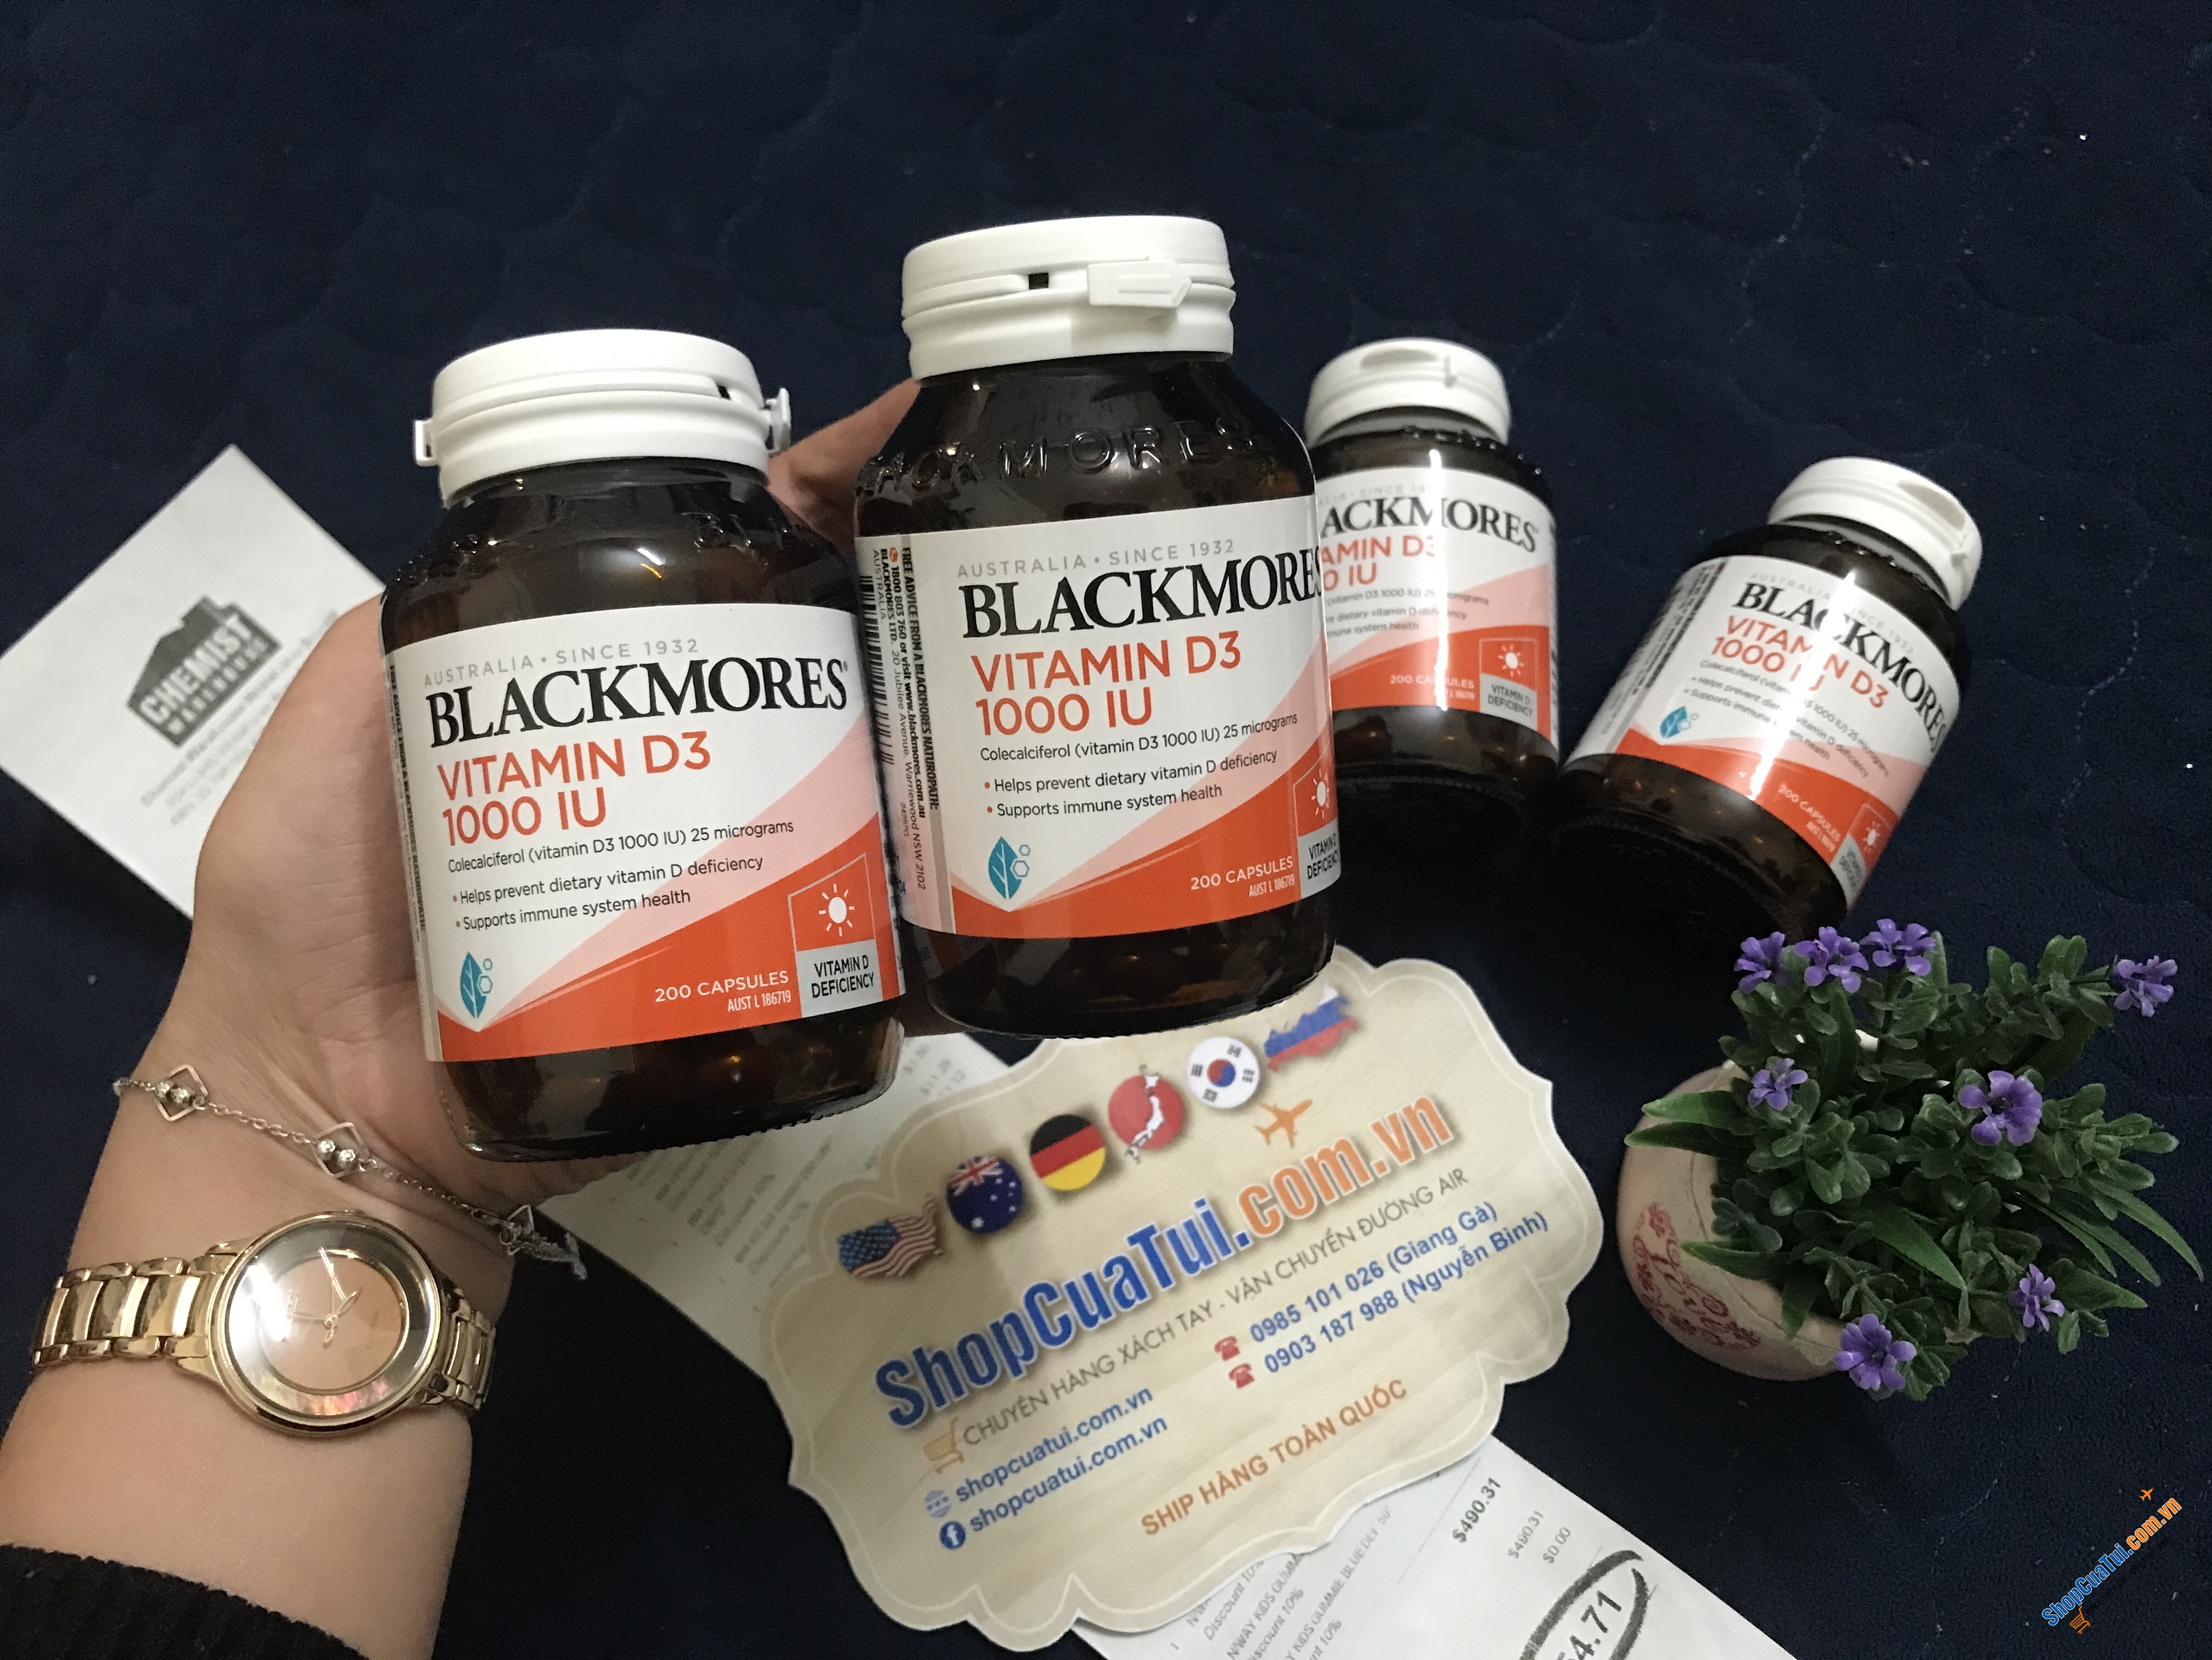 Viên uống bổ sung Vitamin D3 BLACKMORES VITAMIN D3 1000IU của Úc - Blackmores Vitamin D3 1000IU 200 Capsules - giúp tăng sức đề kháng và hệ miễn dịch